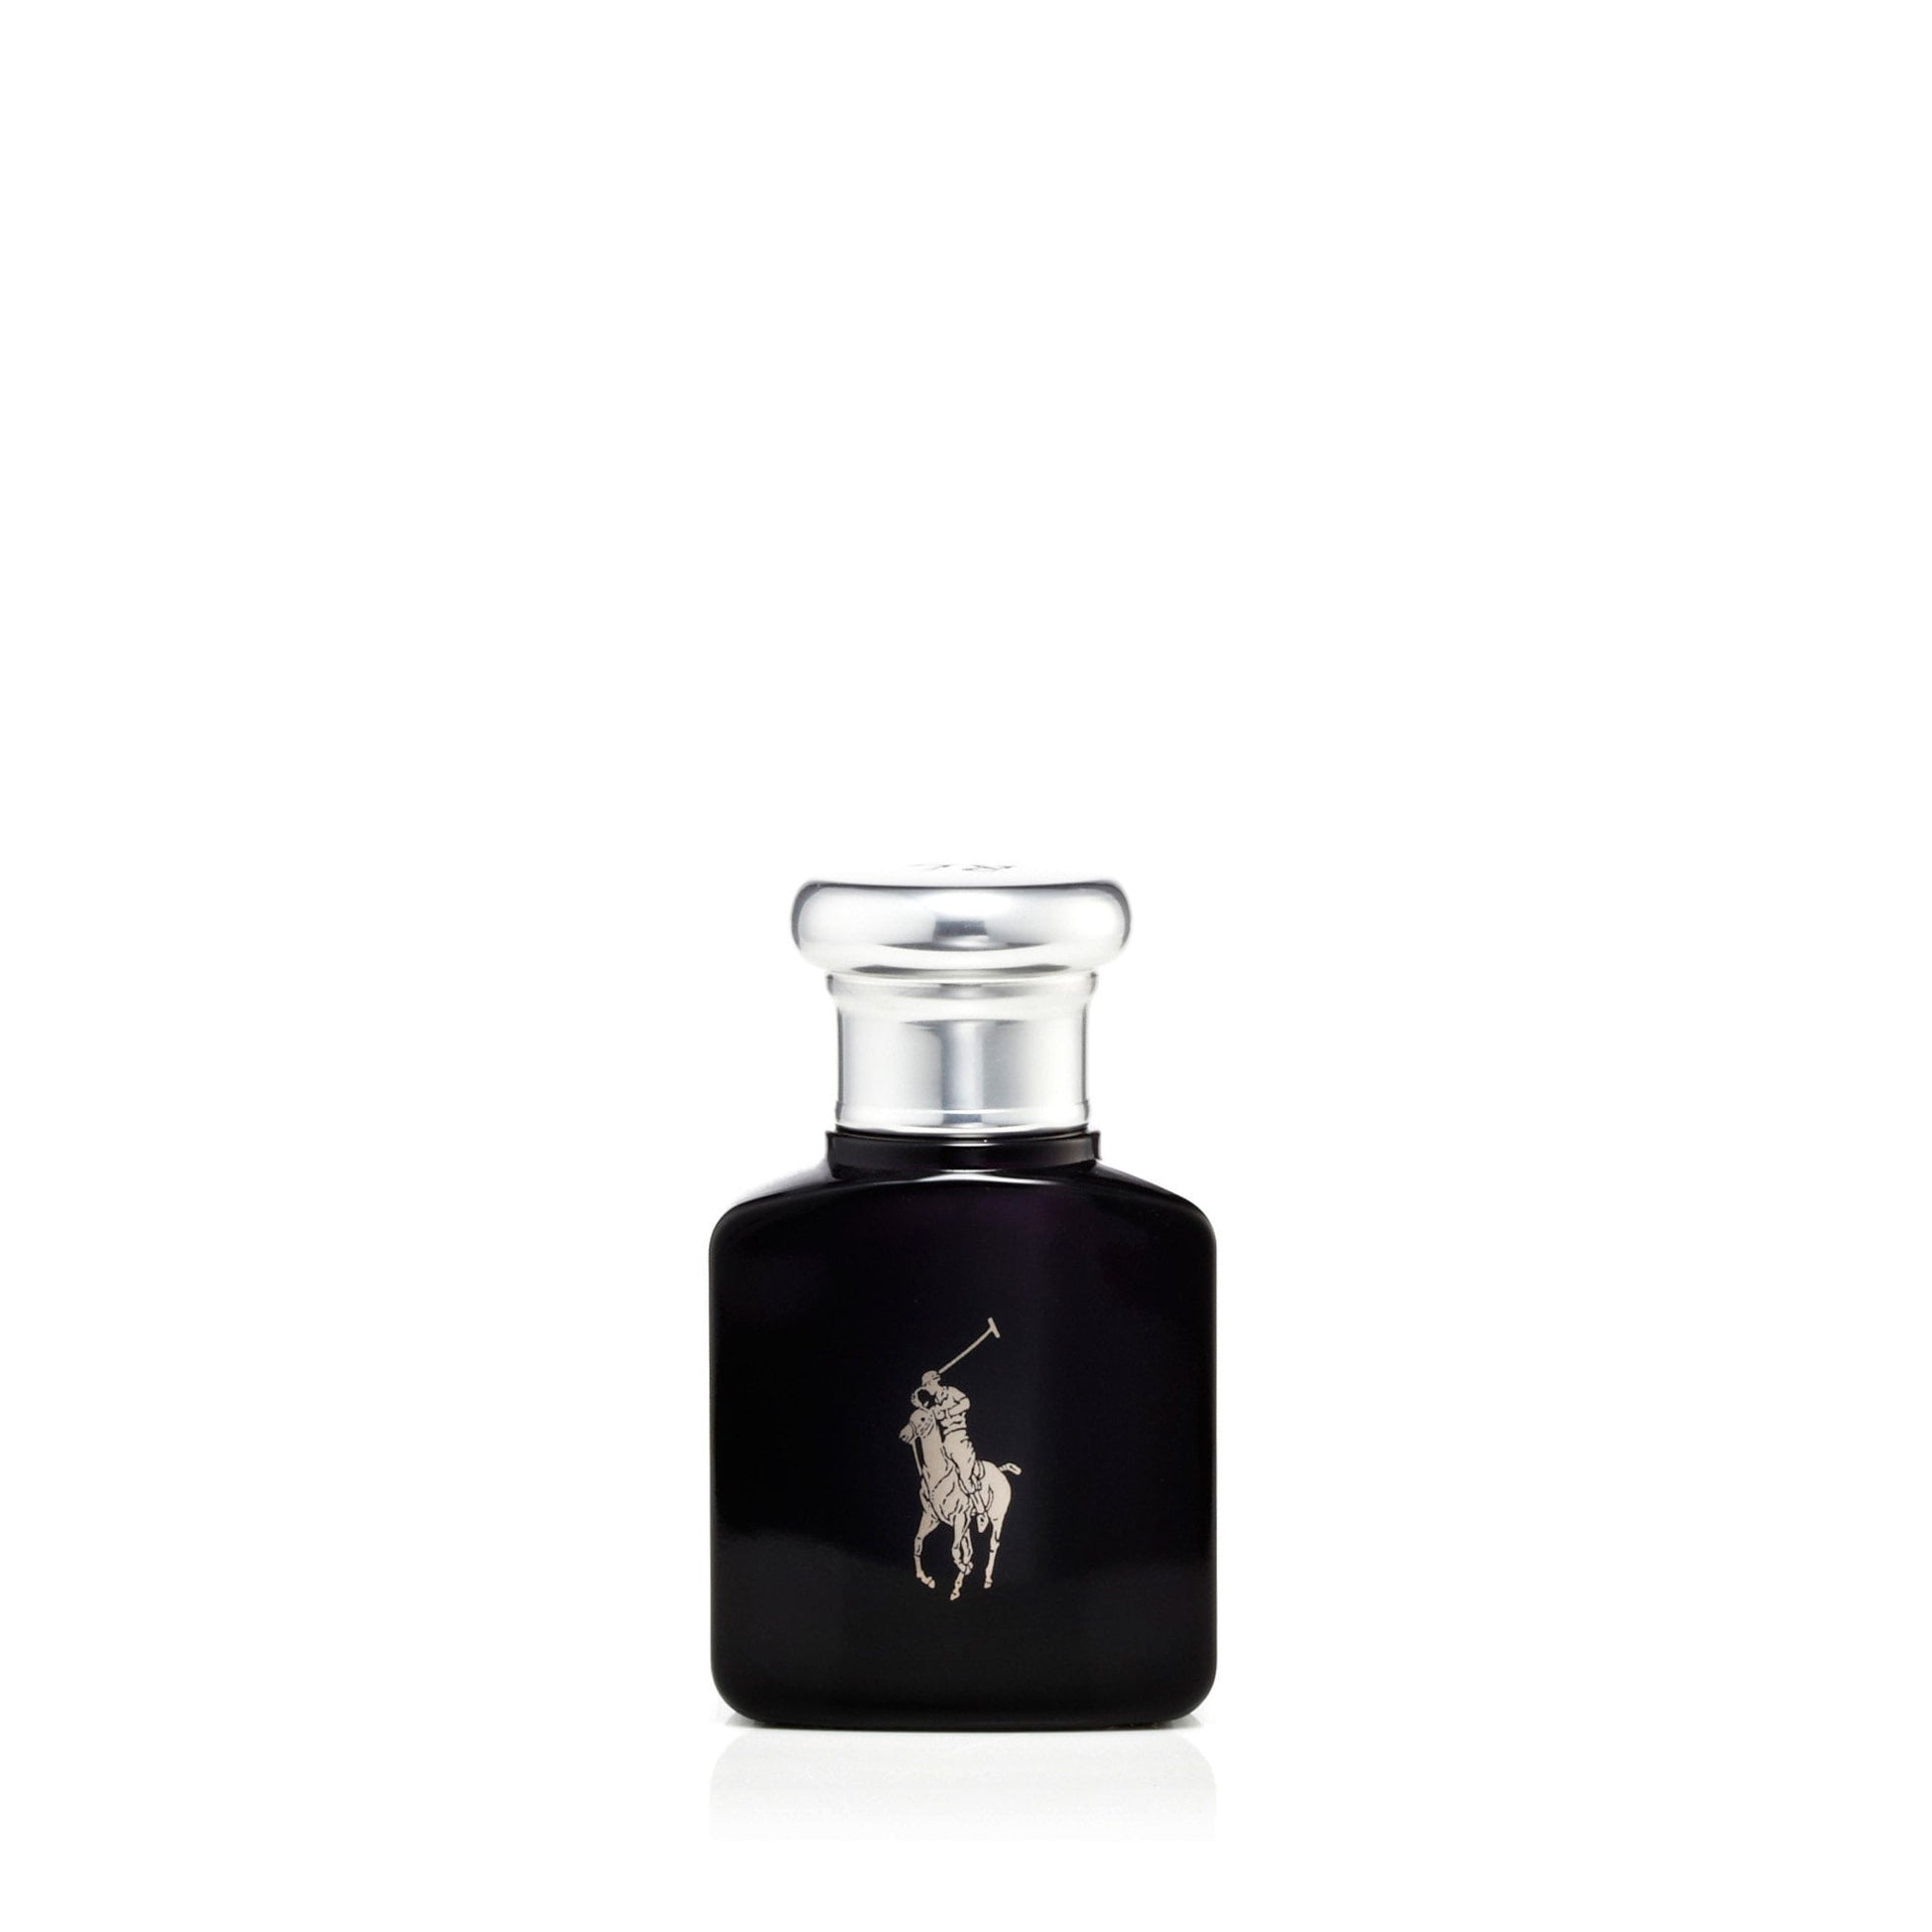 Polo Black Eau de Toilette Spray for Men by Ralph Lauren, Product image 3